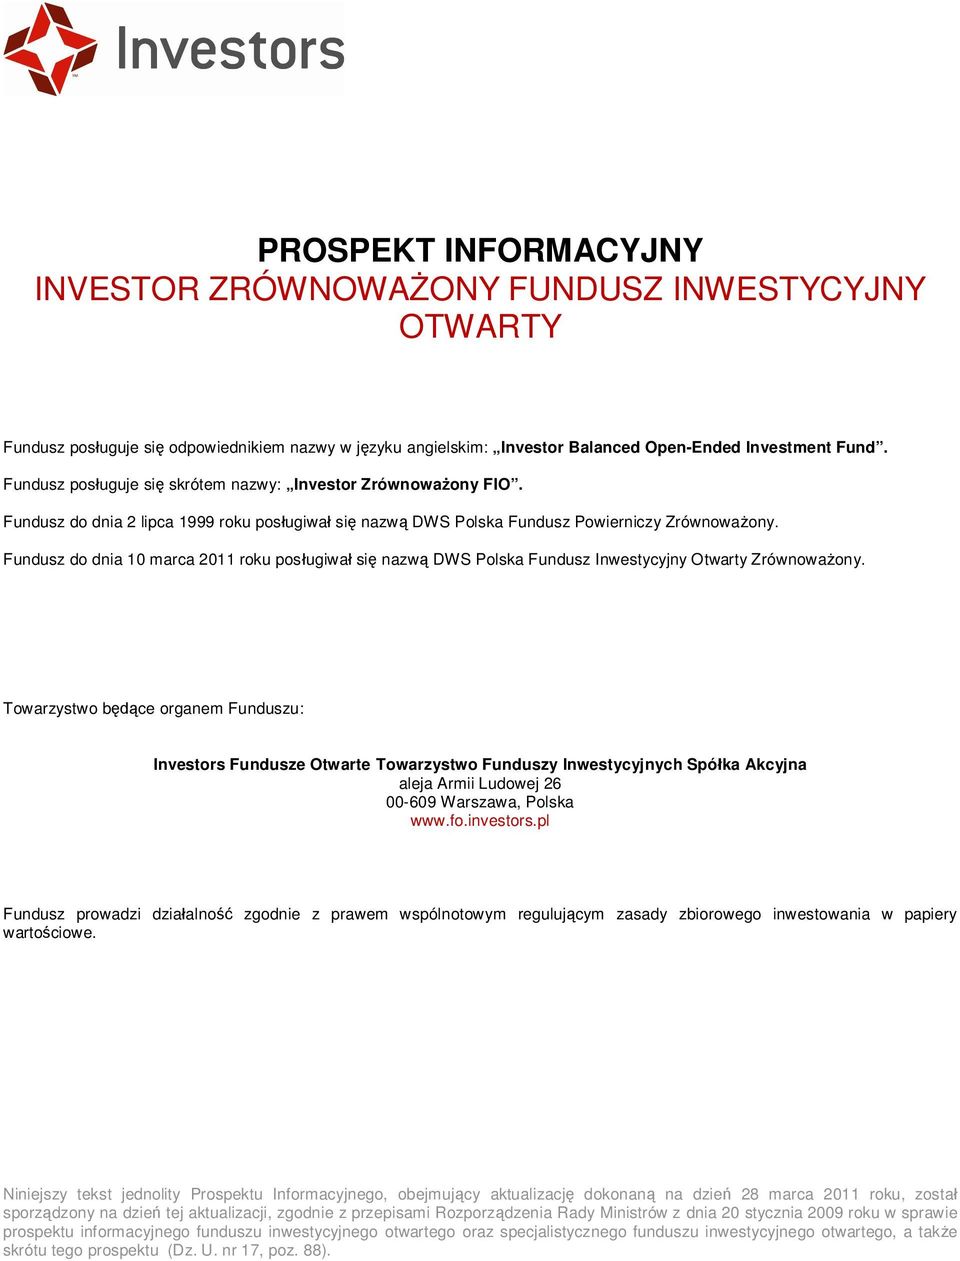 Fundusz do dnia 10 marca 2011 roku pos ugiwa si nazw DWS Polska Fundusz Inwestycyjny Otwarty Zrównowa ony.